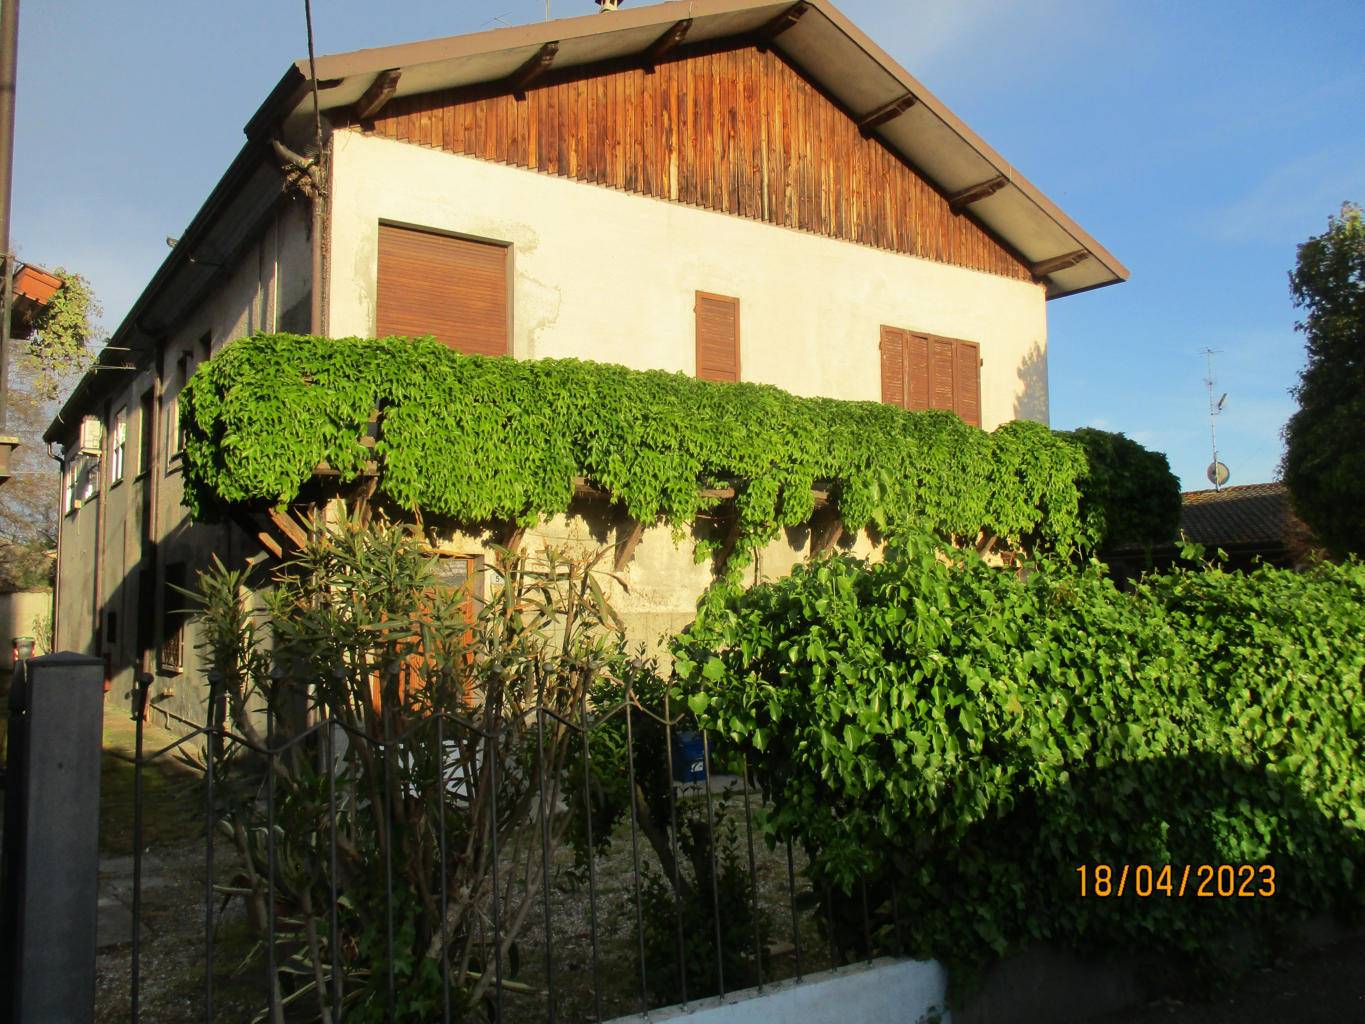 Villa Bifamiliare in vendita a Ostellato, 7 locali, prezzo € 84.000 | PortaleAgenzieImmobiliari.it